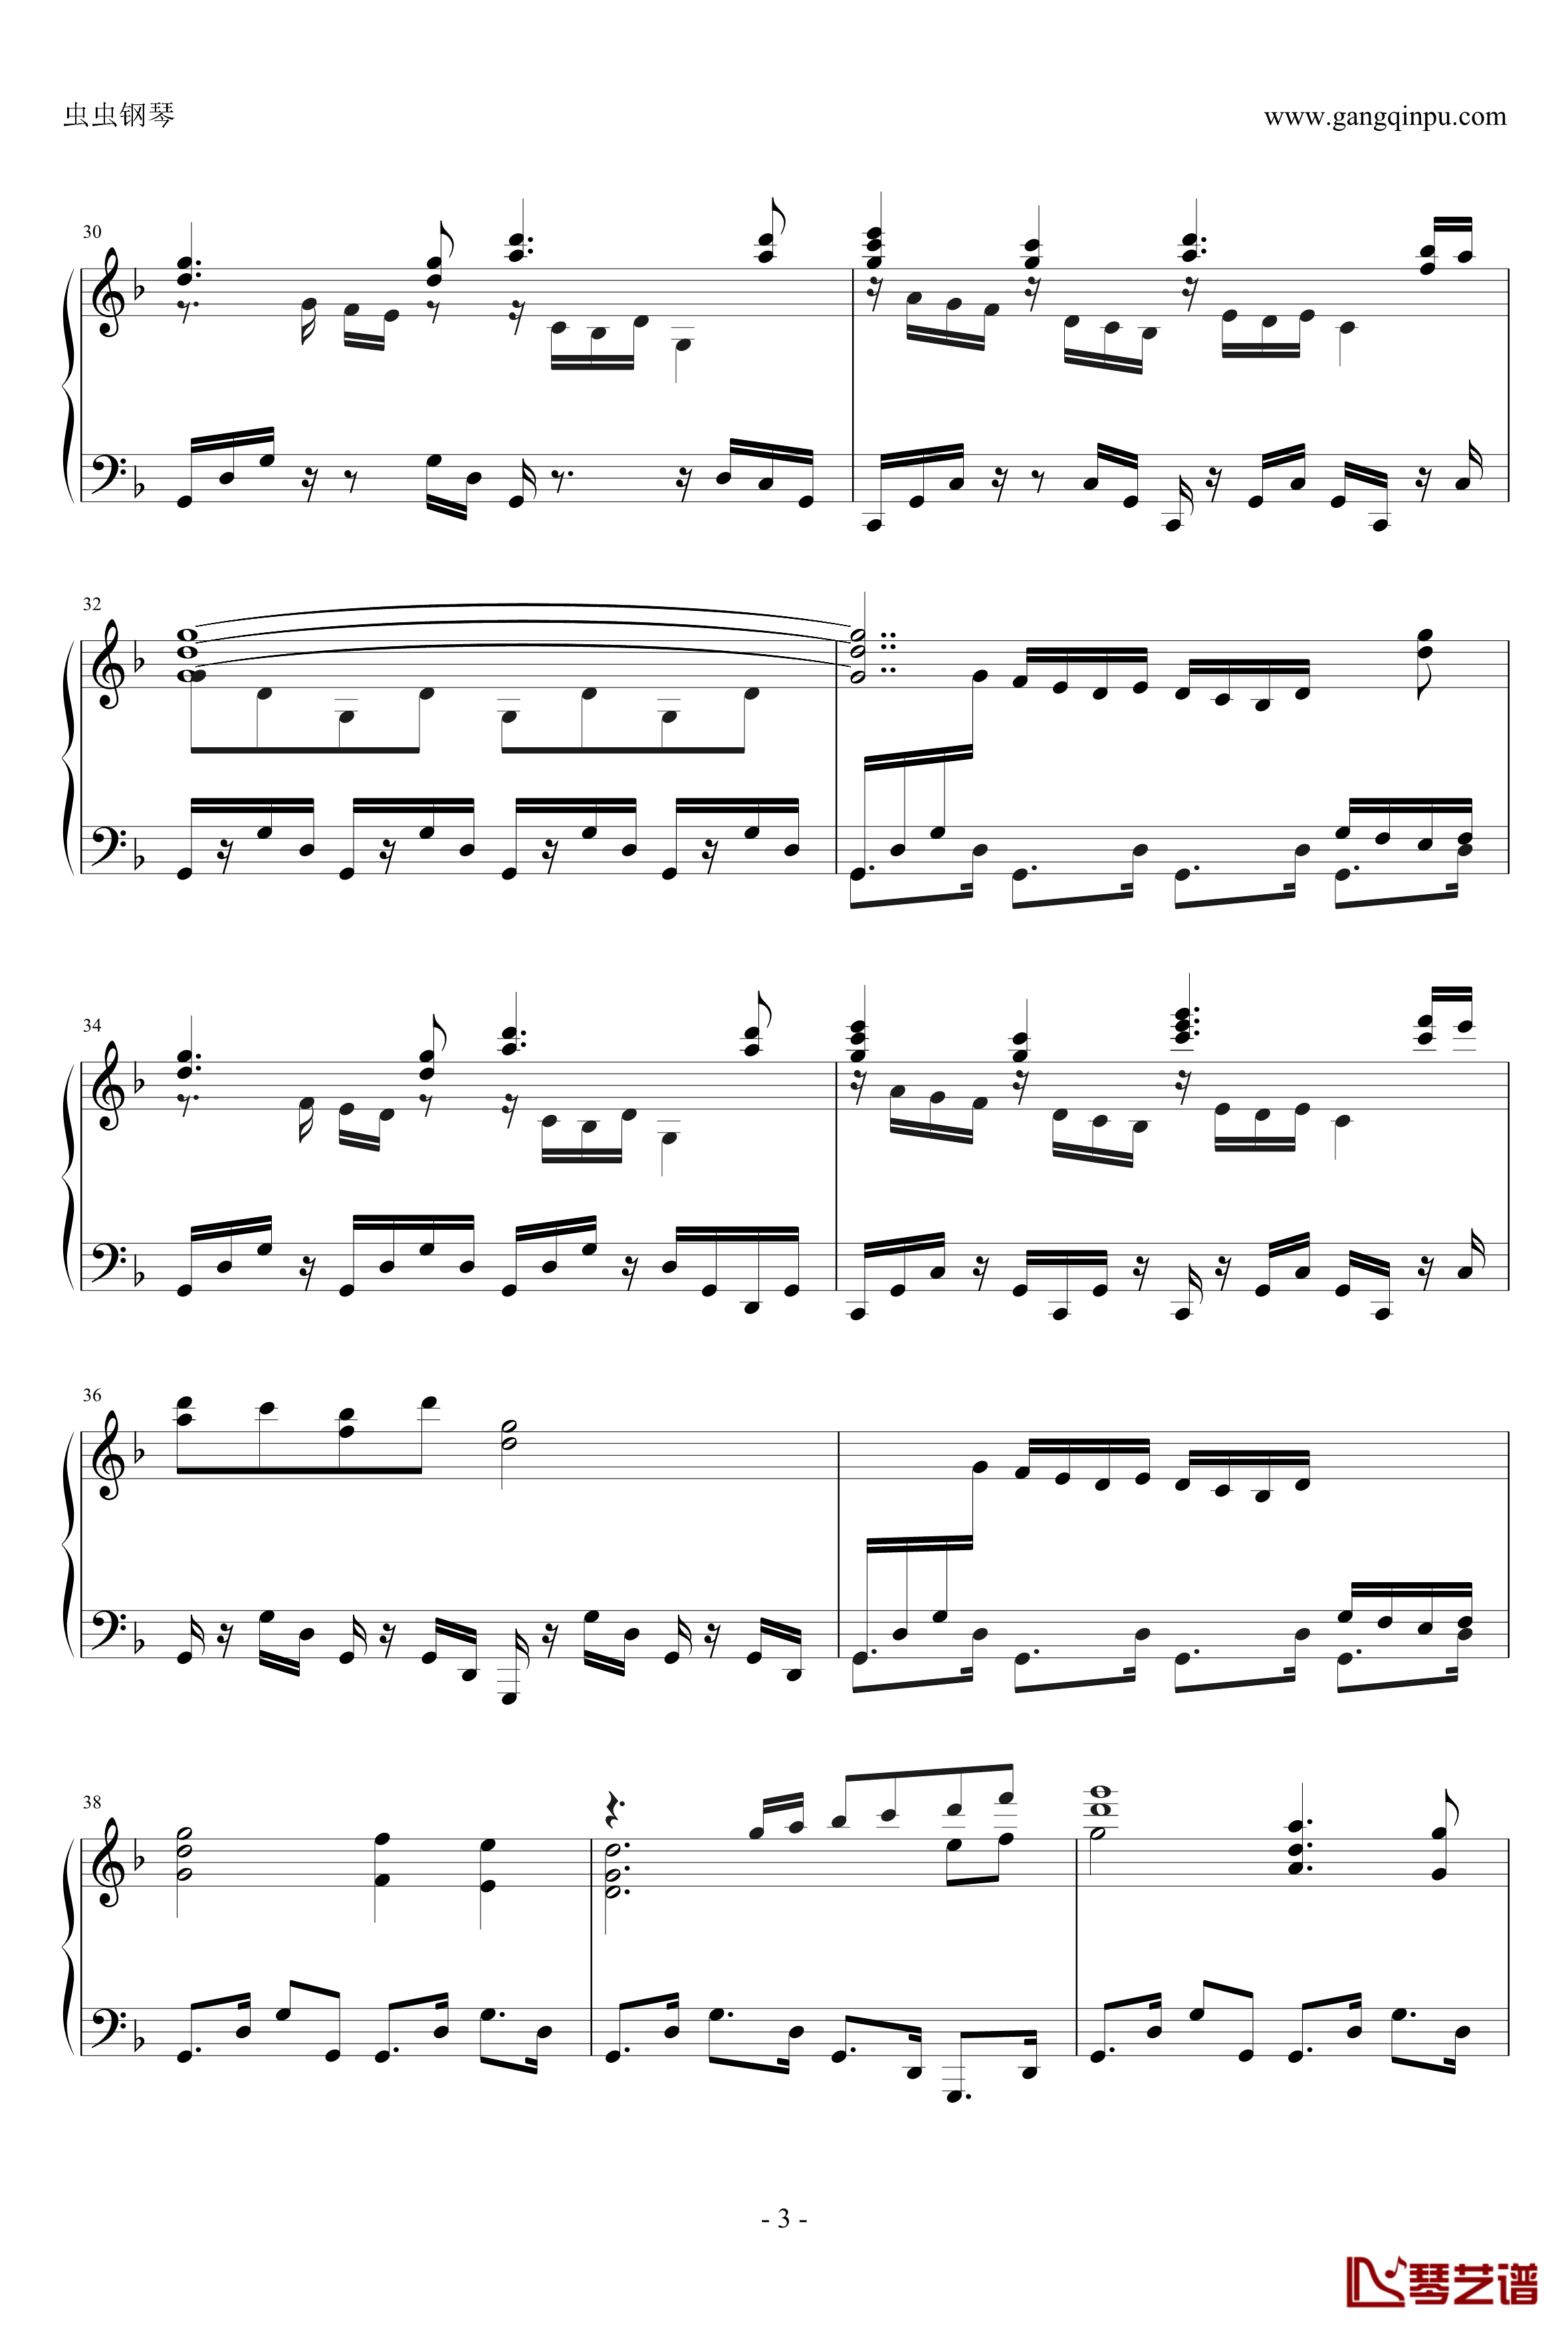 海洋之歌钢琴谱-鲁诺·库莱斯3